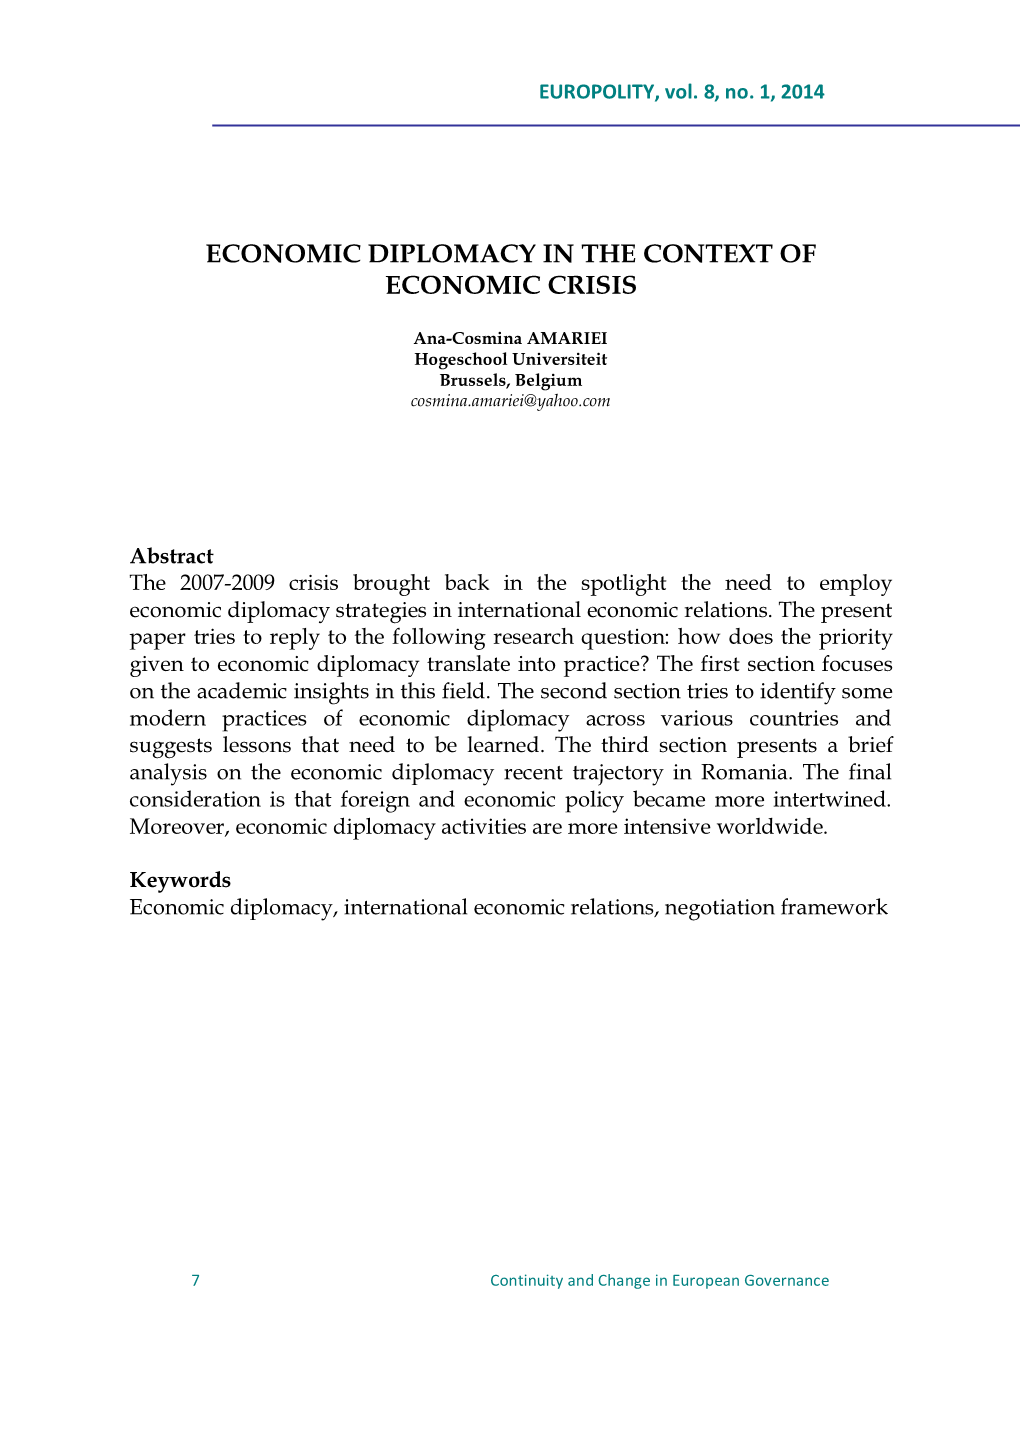 Economic Diplomacy in the Context of Economic Crisis